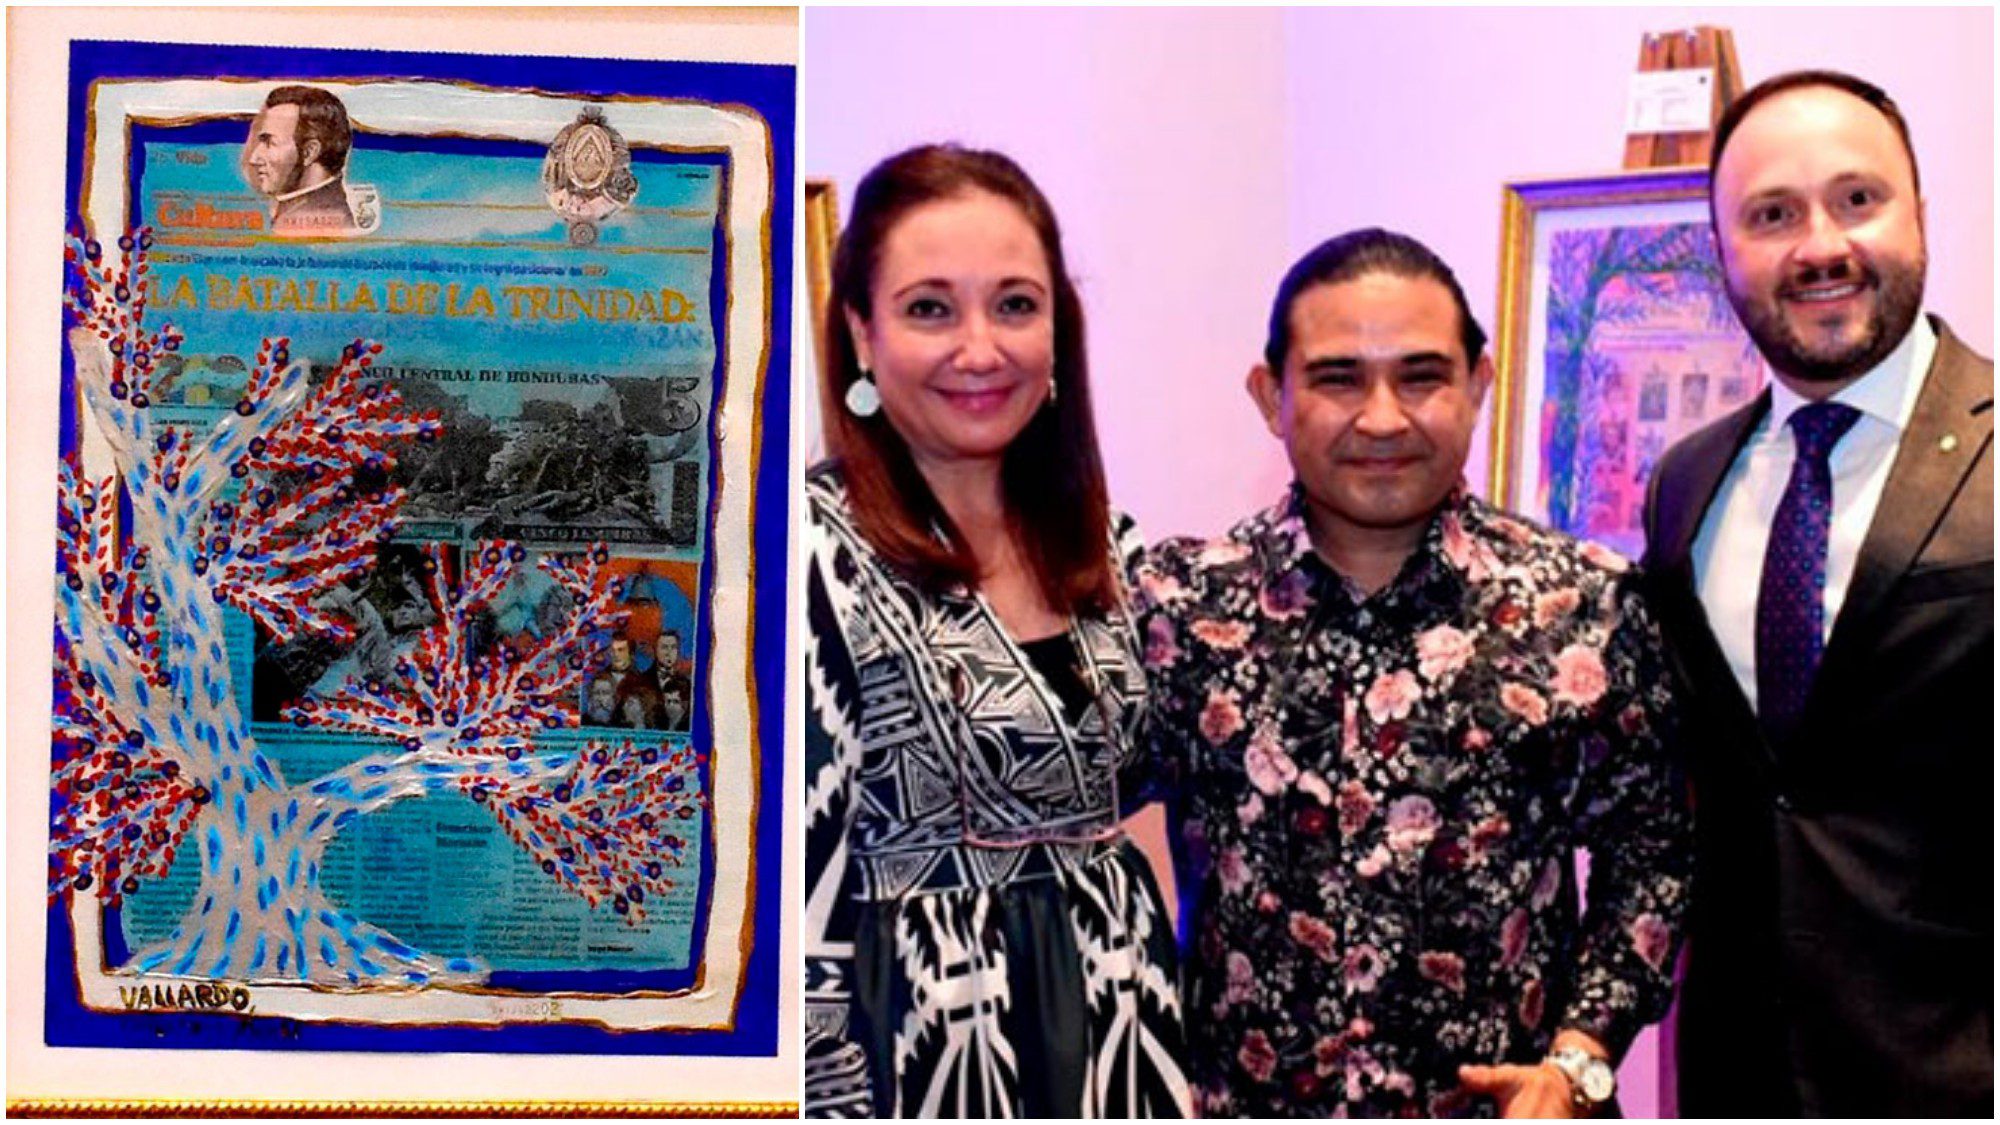 Visita la exposición del hondureño Jaime Vallardo por el Bicentenario